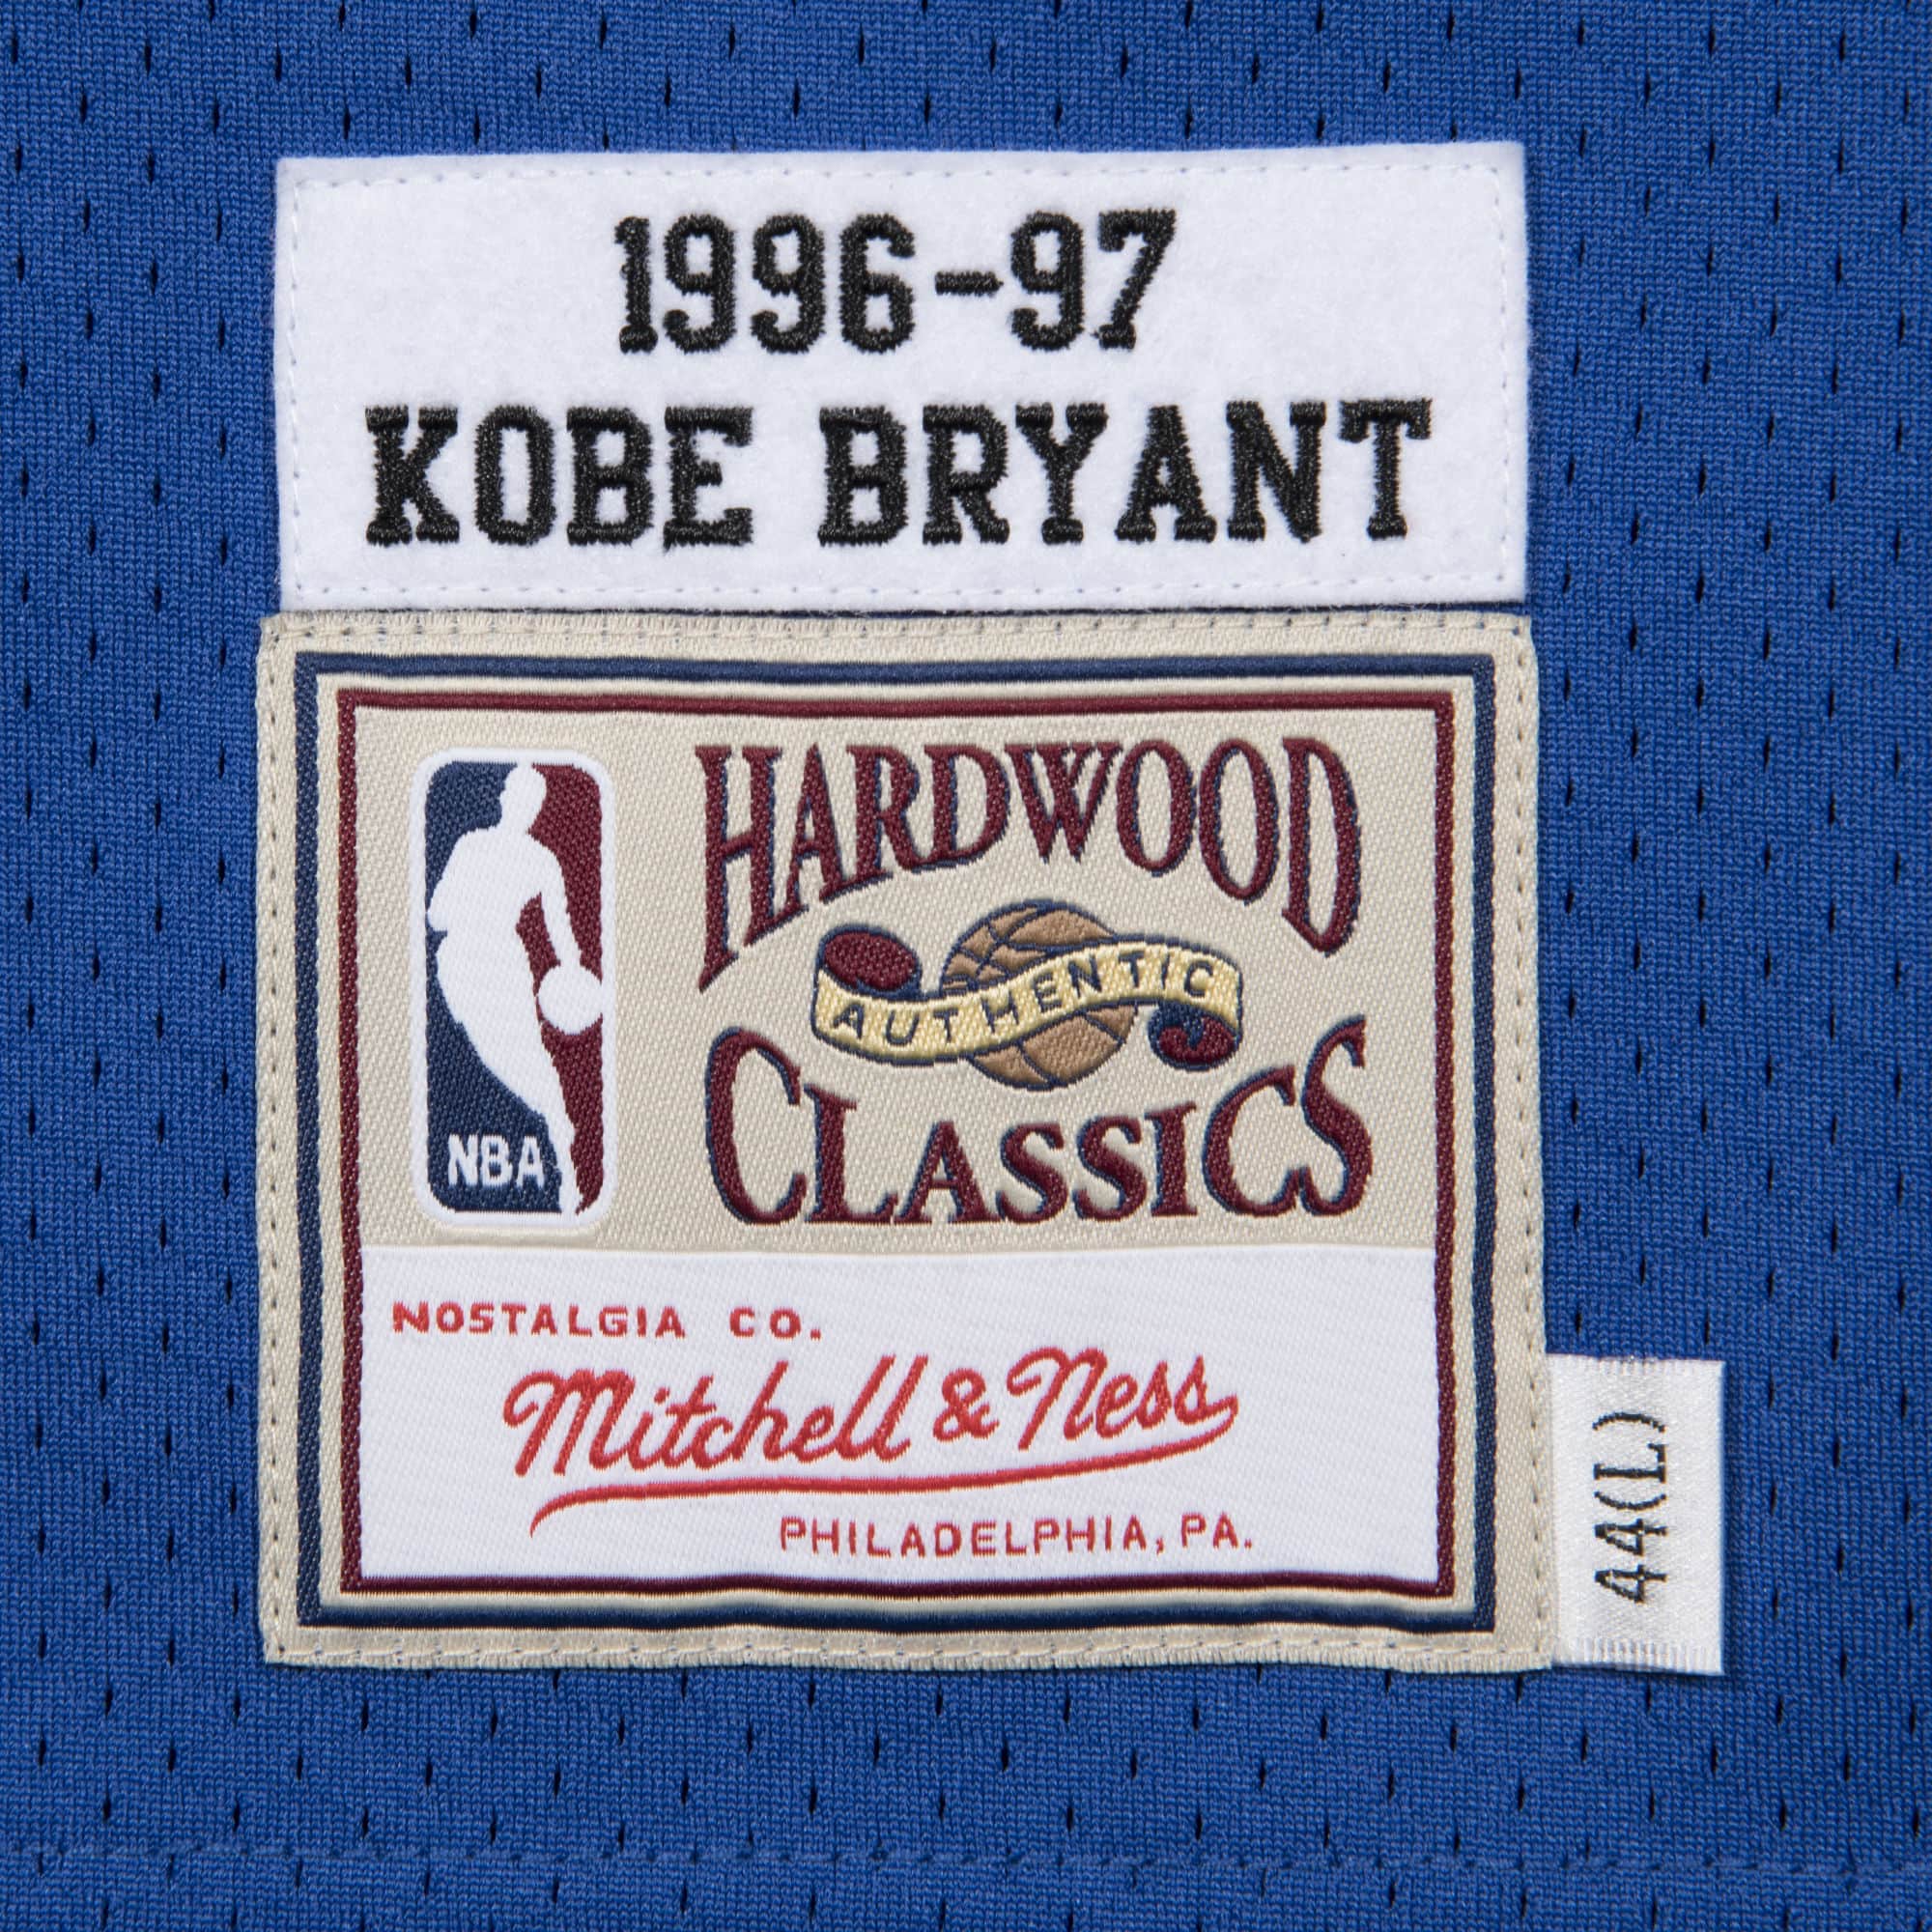 Nba-Kobe Bryant-Jersey 1996-97-Mitchell and Ness Hardwood Classic